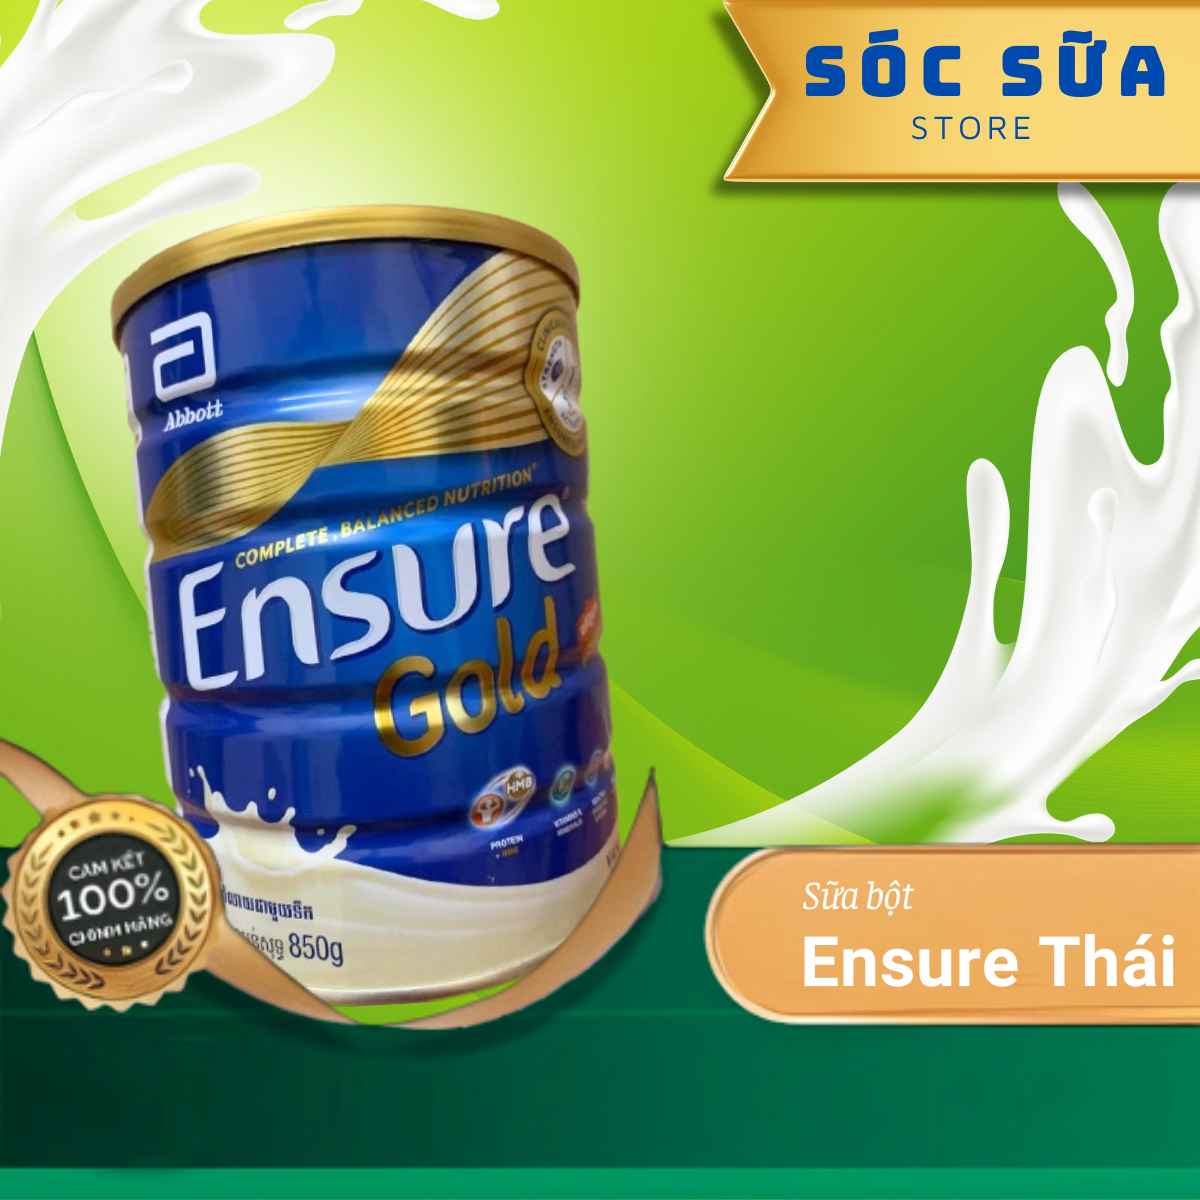 Sữa bột Ensure Gold Abbott Thái Lan (HMB) hộp 850g, hương vani it ngọt, dinh dưỡng cho người lớn